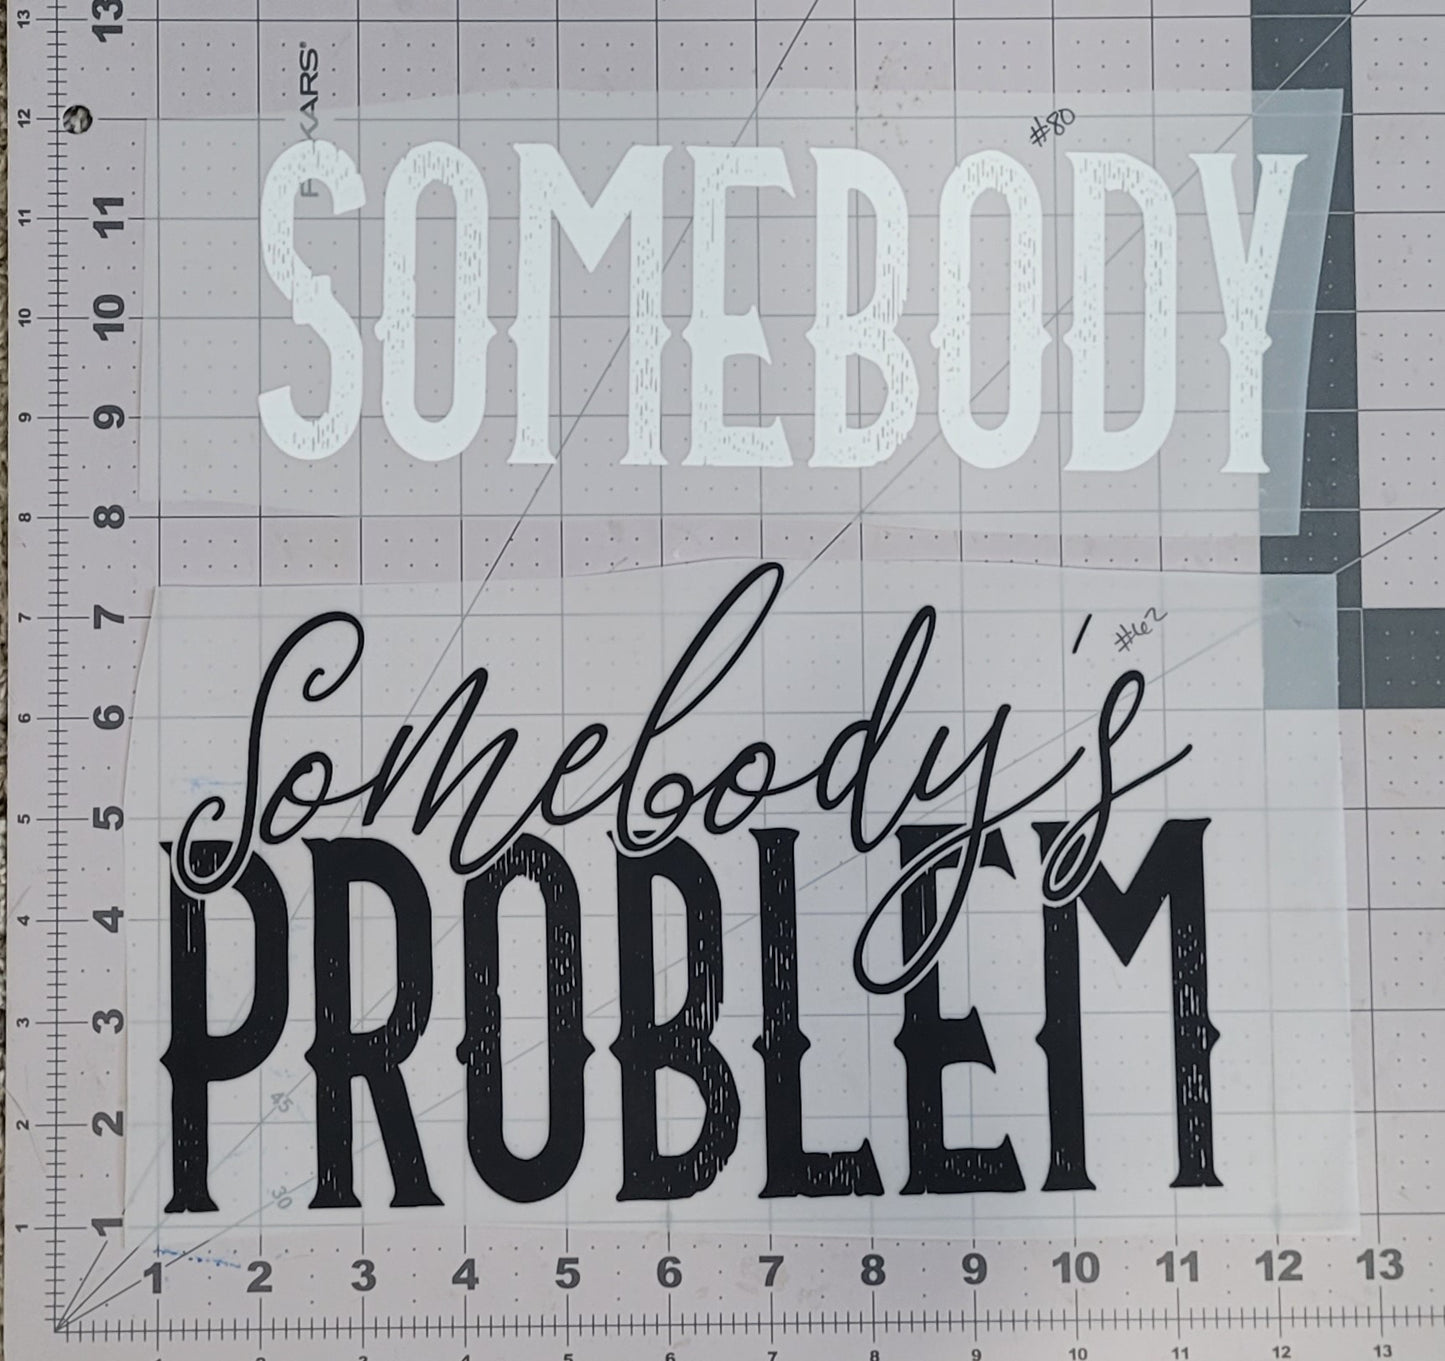 Somebody/Somebody's Problem